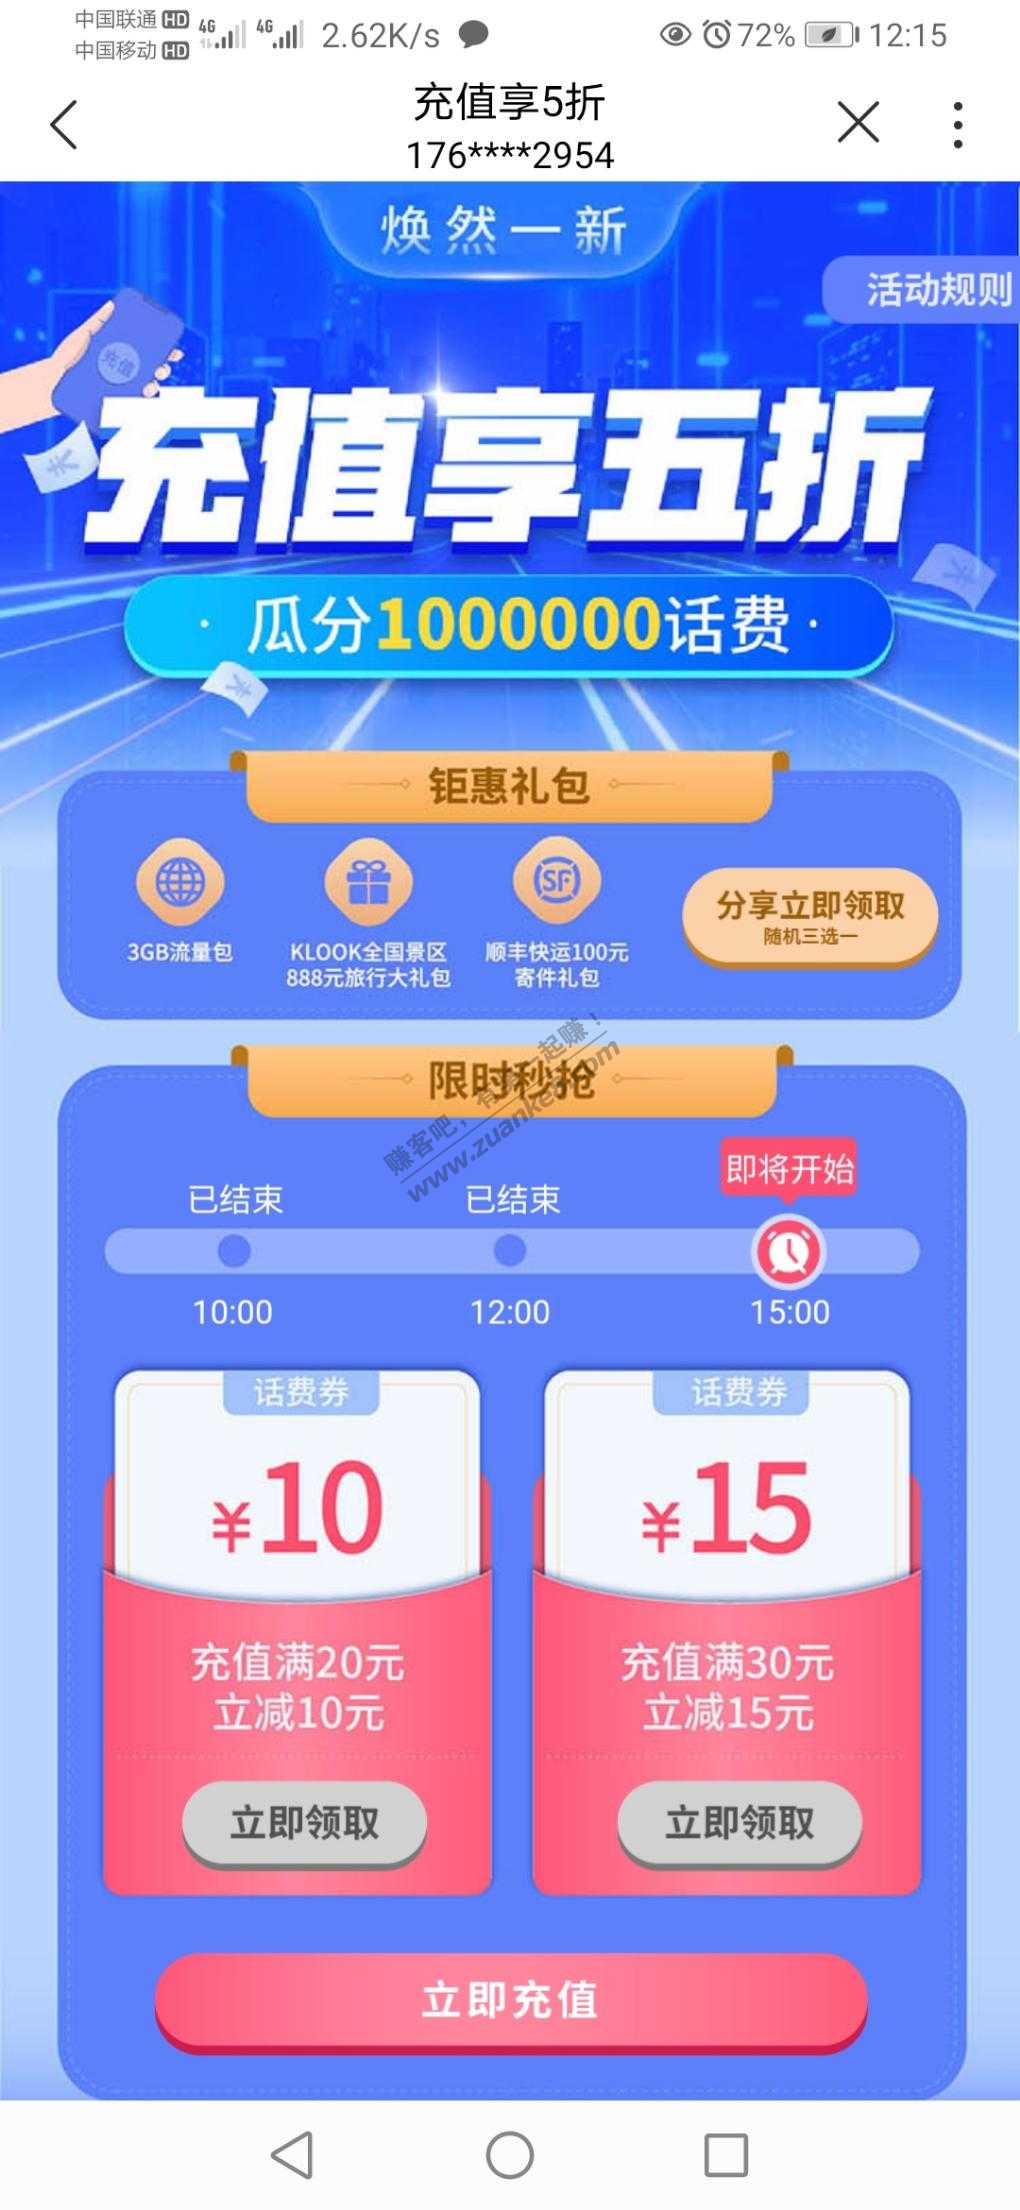 上海联通用户抢话费满减券-惠小助(52huixz.com)